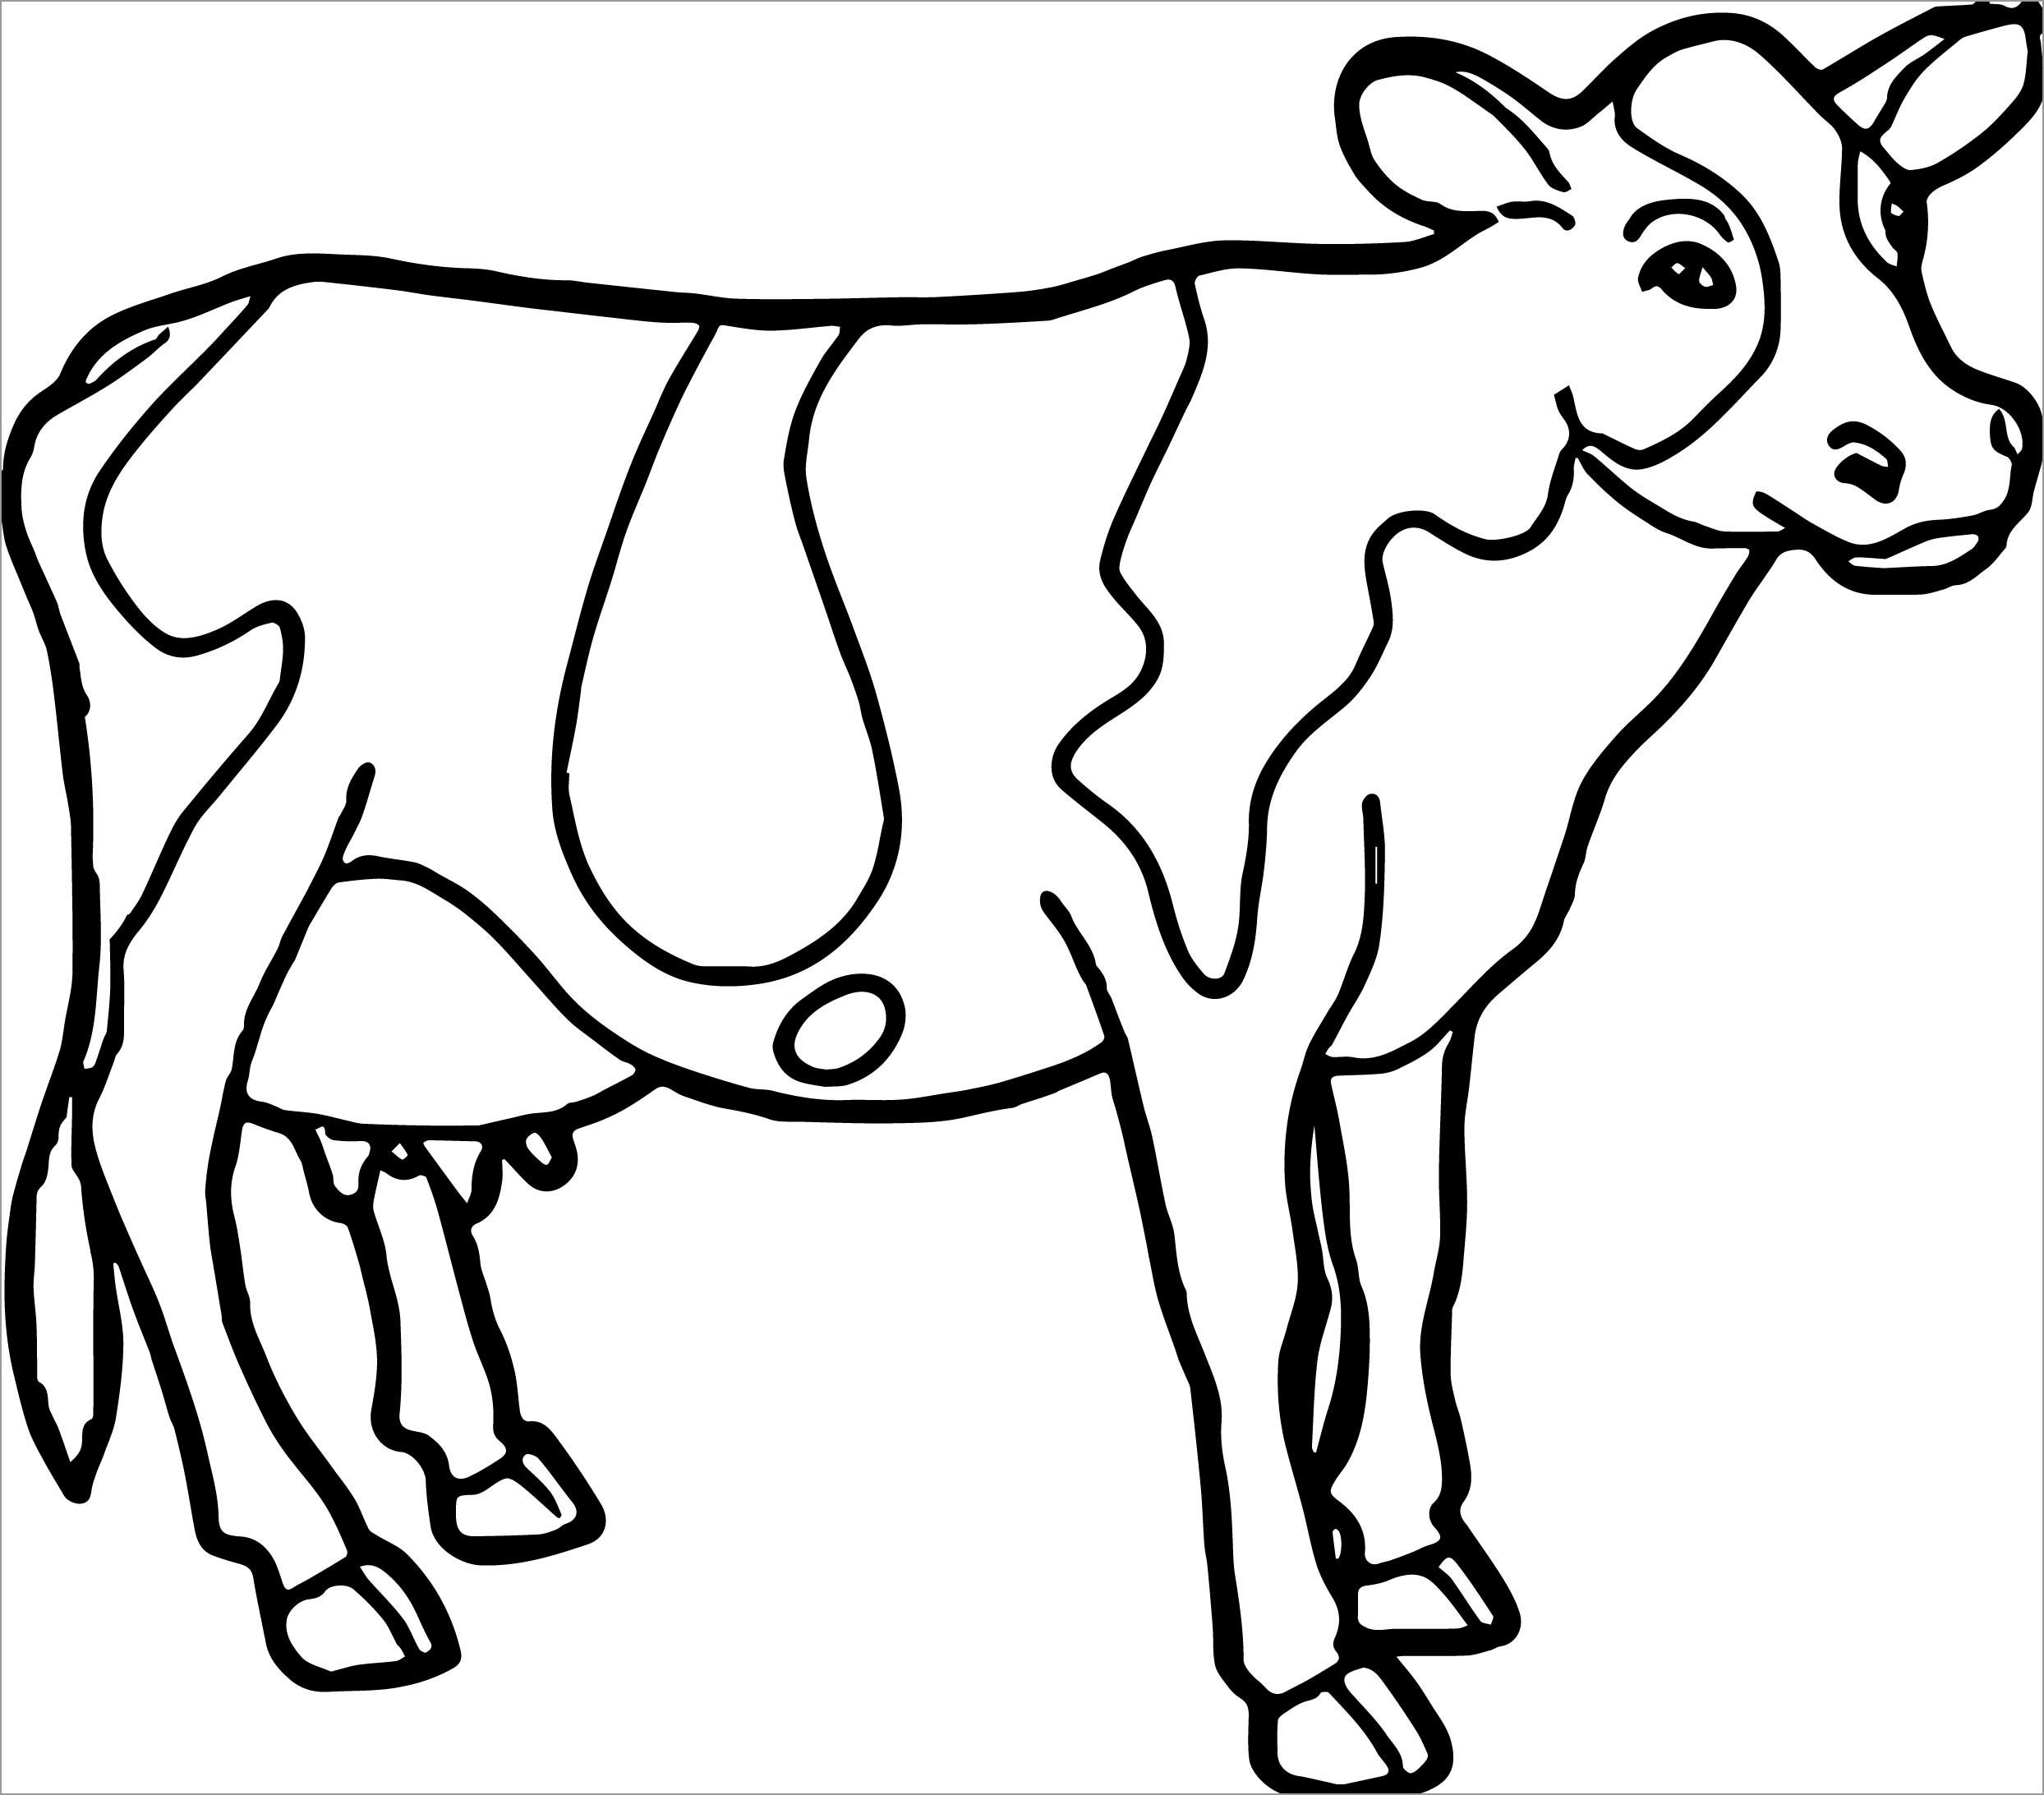 Tranh tô màu hình con bò cho bé